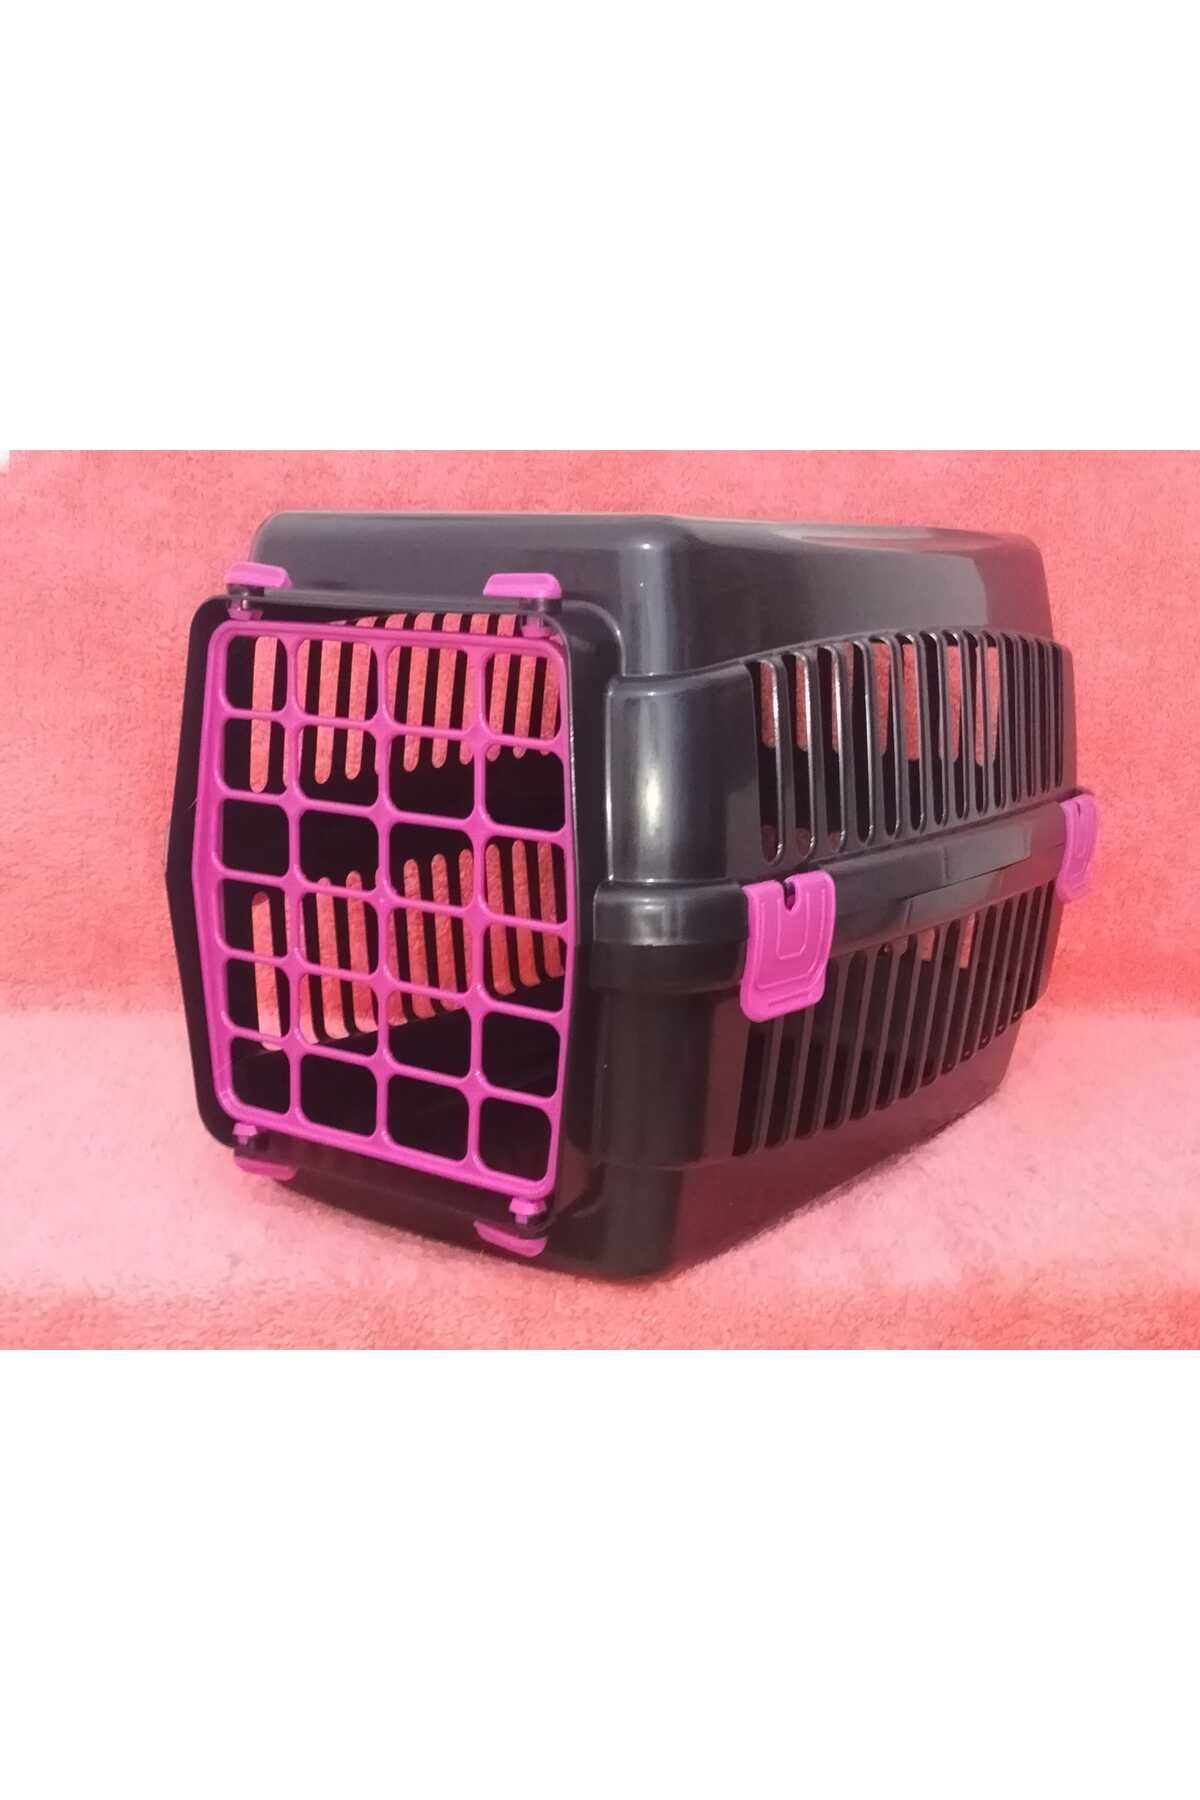 mint's Kedi-Köpek Taşıma Kabı Plastik